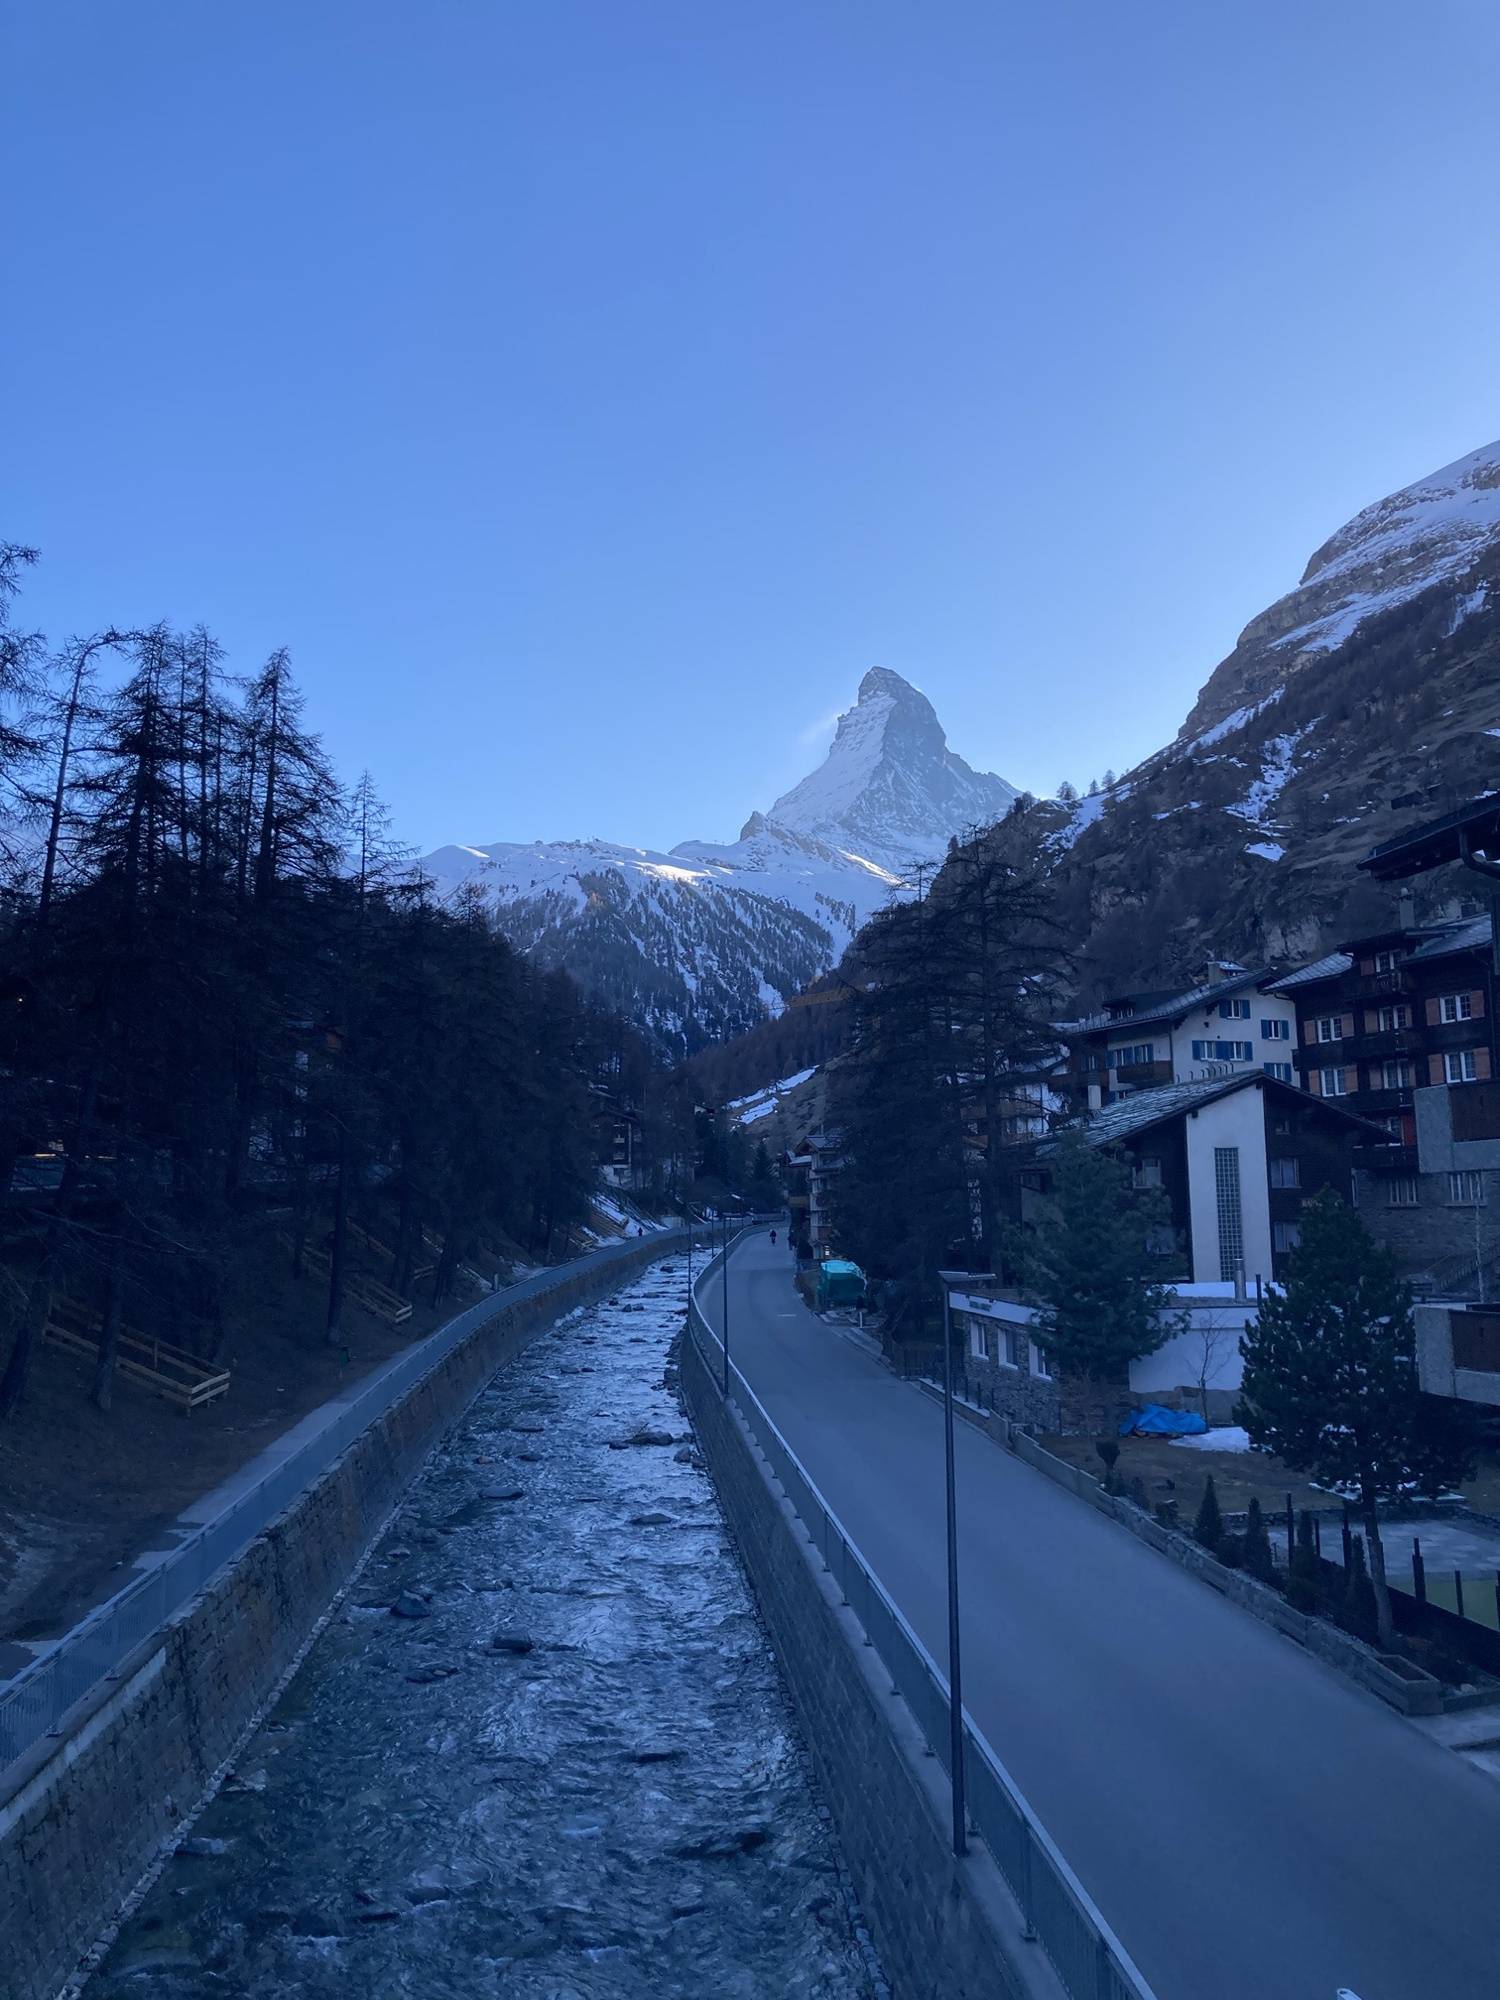 der berühmte Berg Matterhorn, noch von der Sonne beleuchtet, im Vordergrund ein Fluss, der sich auf den Berg zuwindet, die Bildstimmung ist bläulich, wie in einem Tal, in das die Sonne gerade nicht mehr hinein scheint, aber es ist noch hell